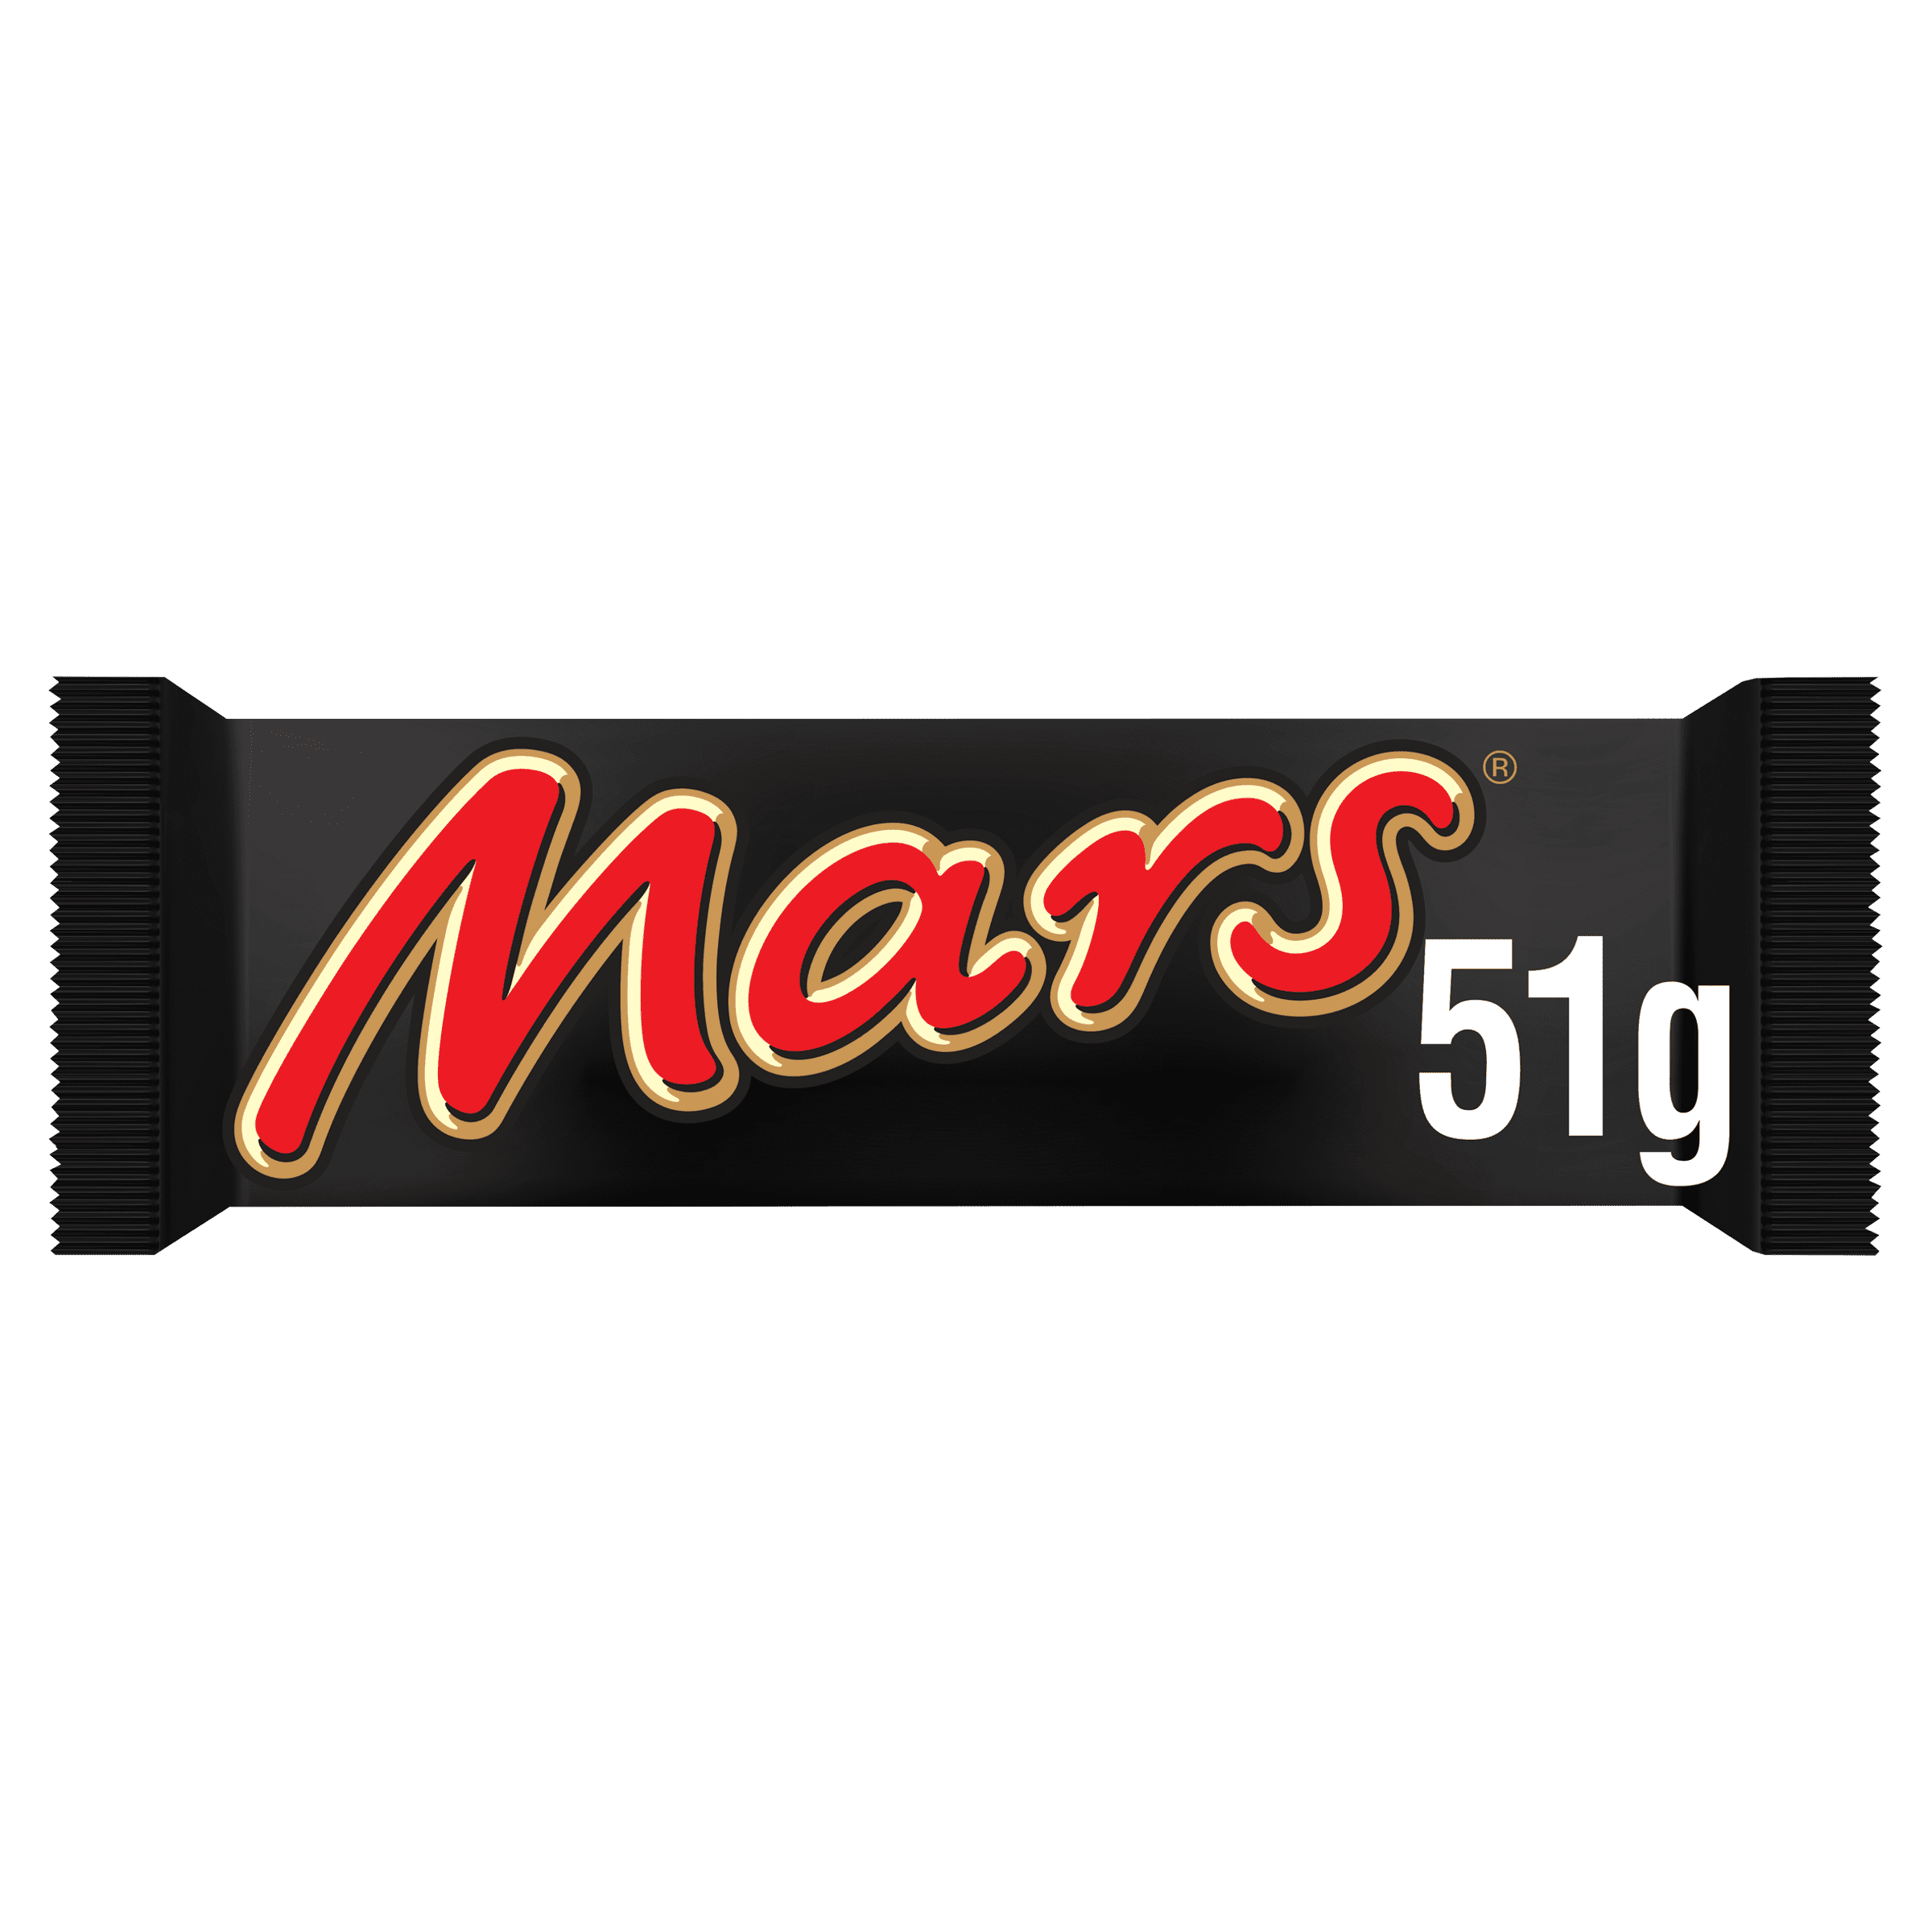 Mars Bars 51G